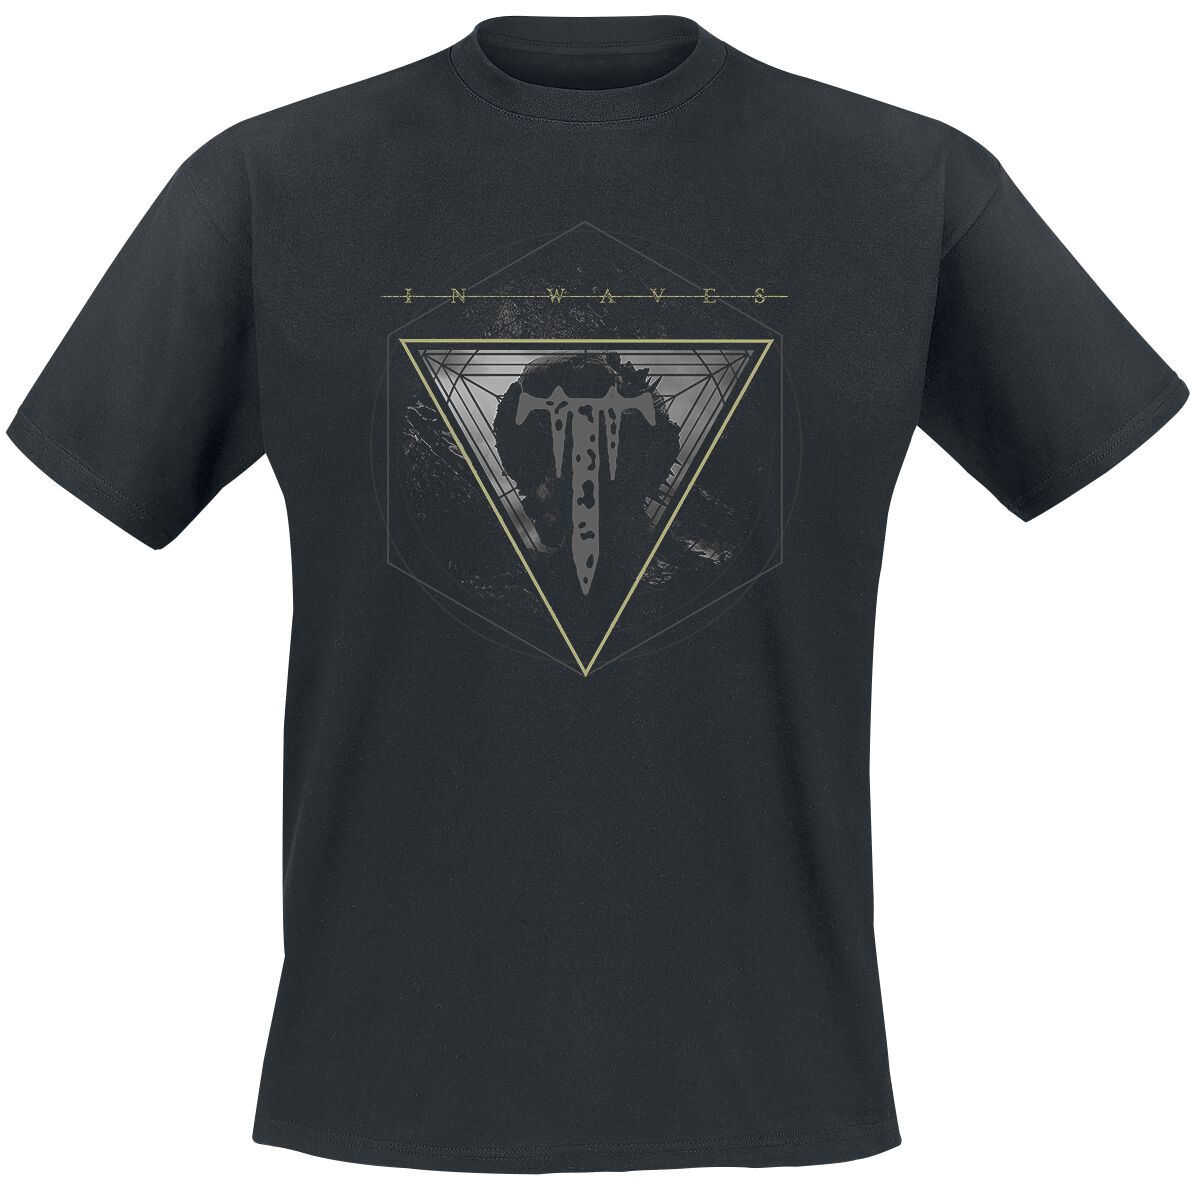 In Waves Remix T-Shirt schwarz von Trivium